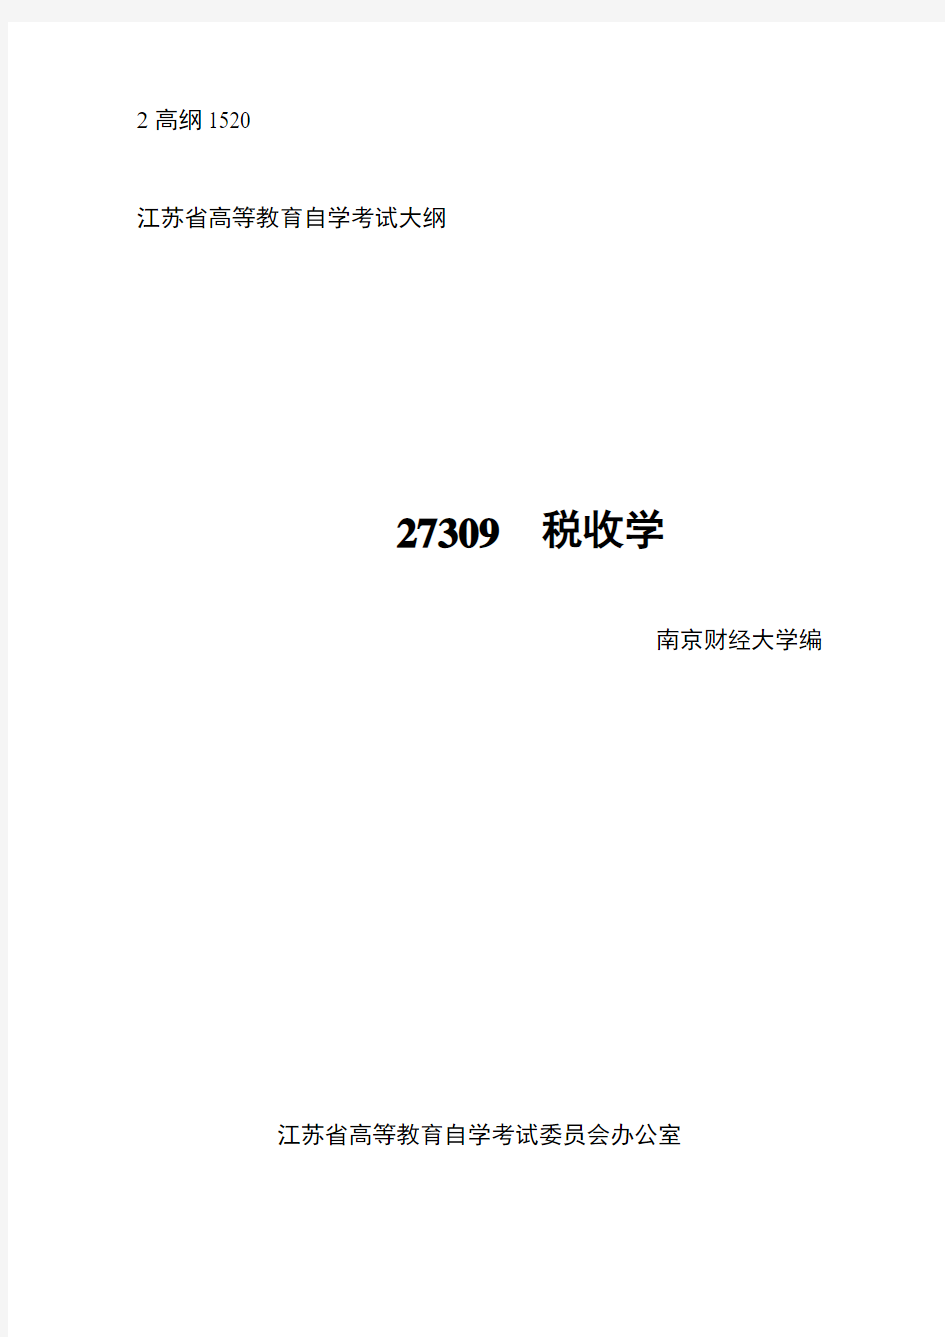 江苏省自考27309税收学考试大纲